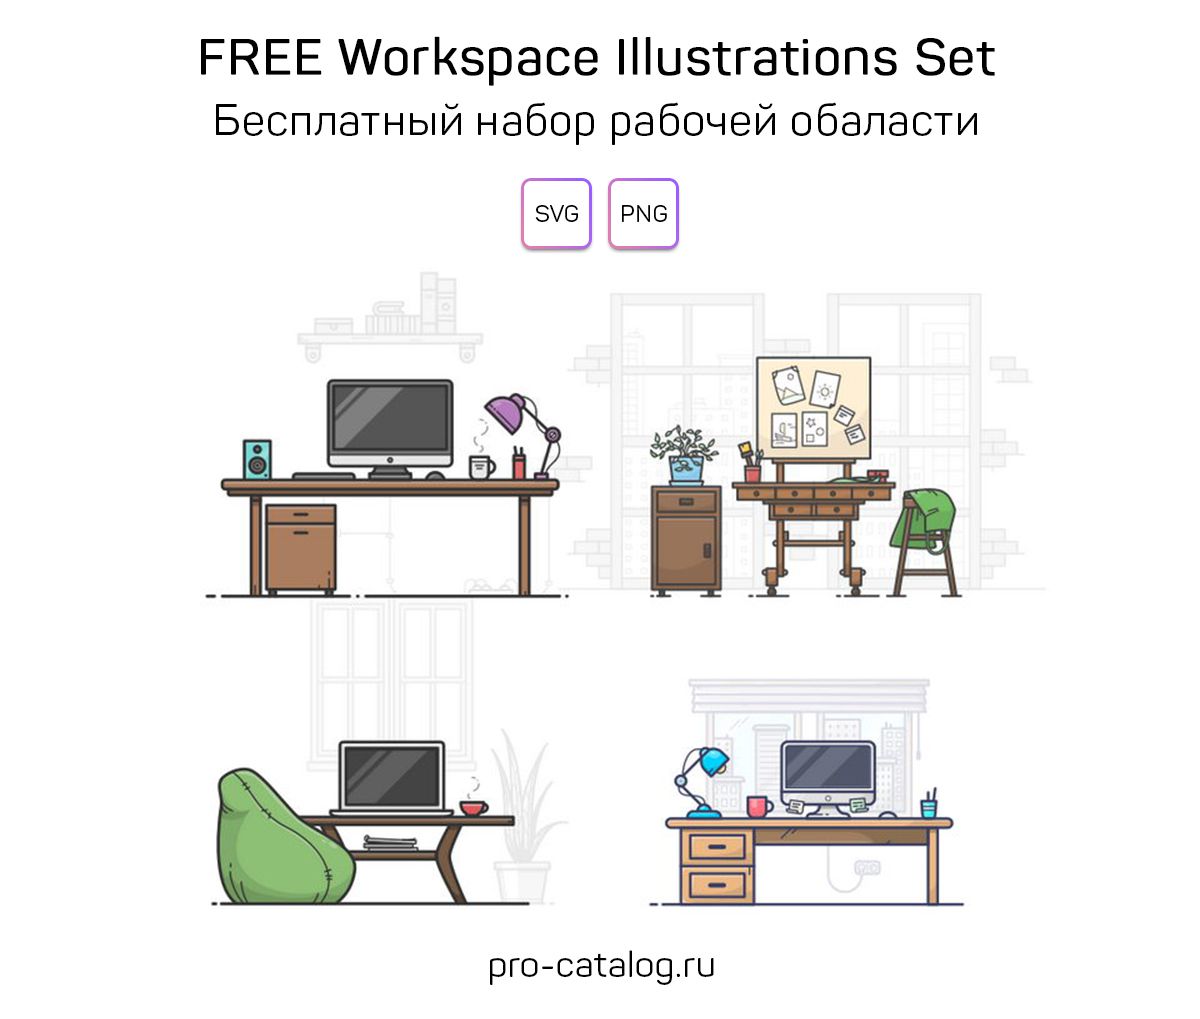 FREE Workspace Illustrations Set | Бесплатный набор иллюстраций рабочей области